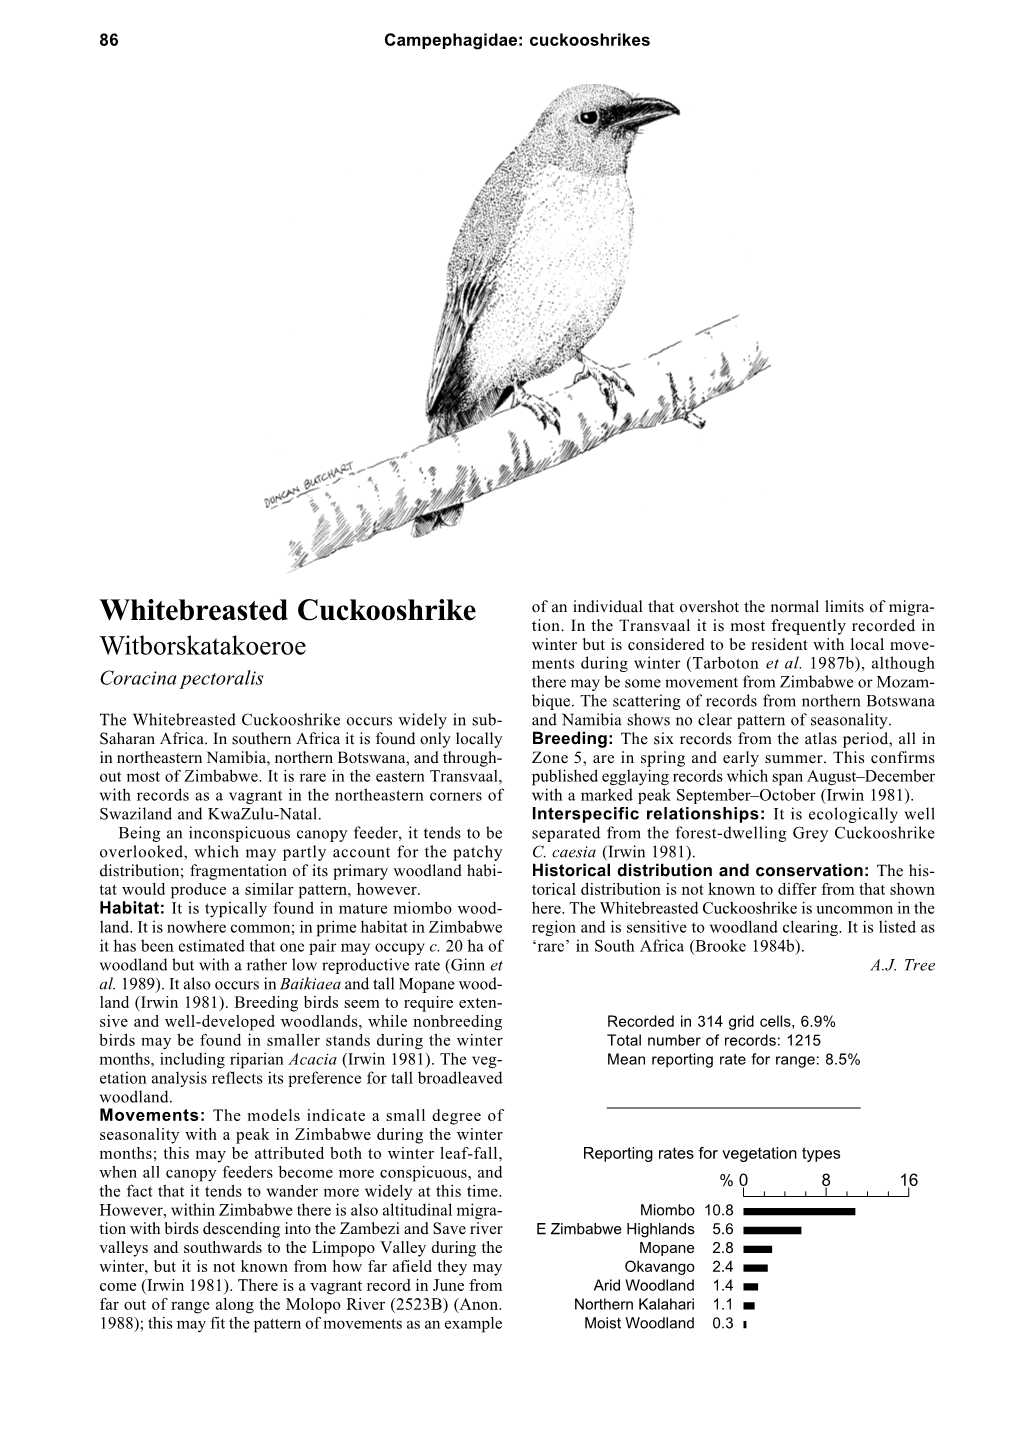 Whitebreasted Cuckooshrike Tion